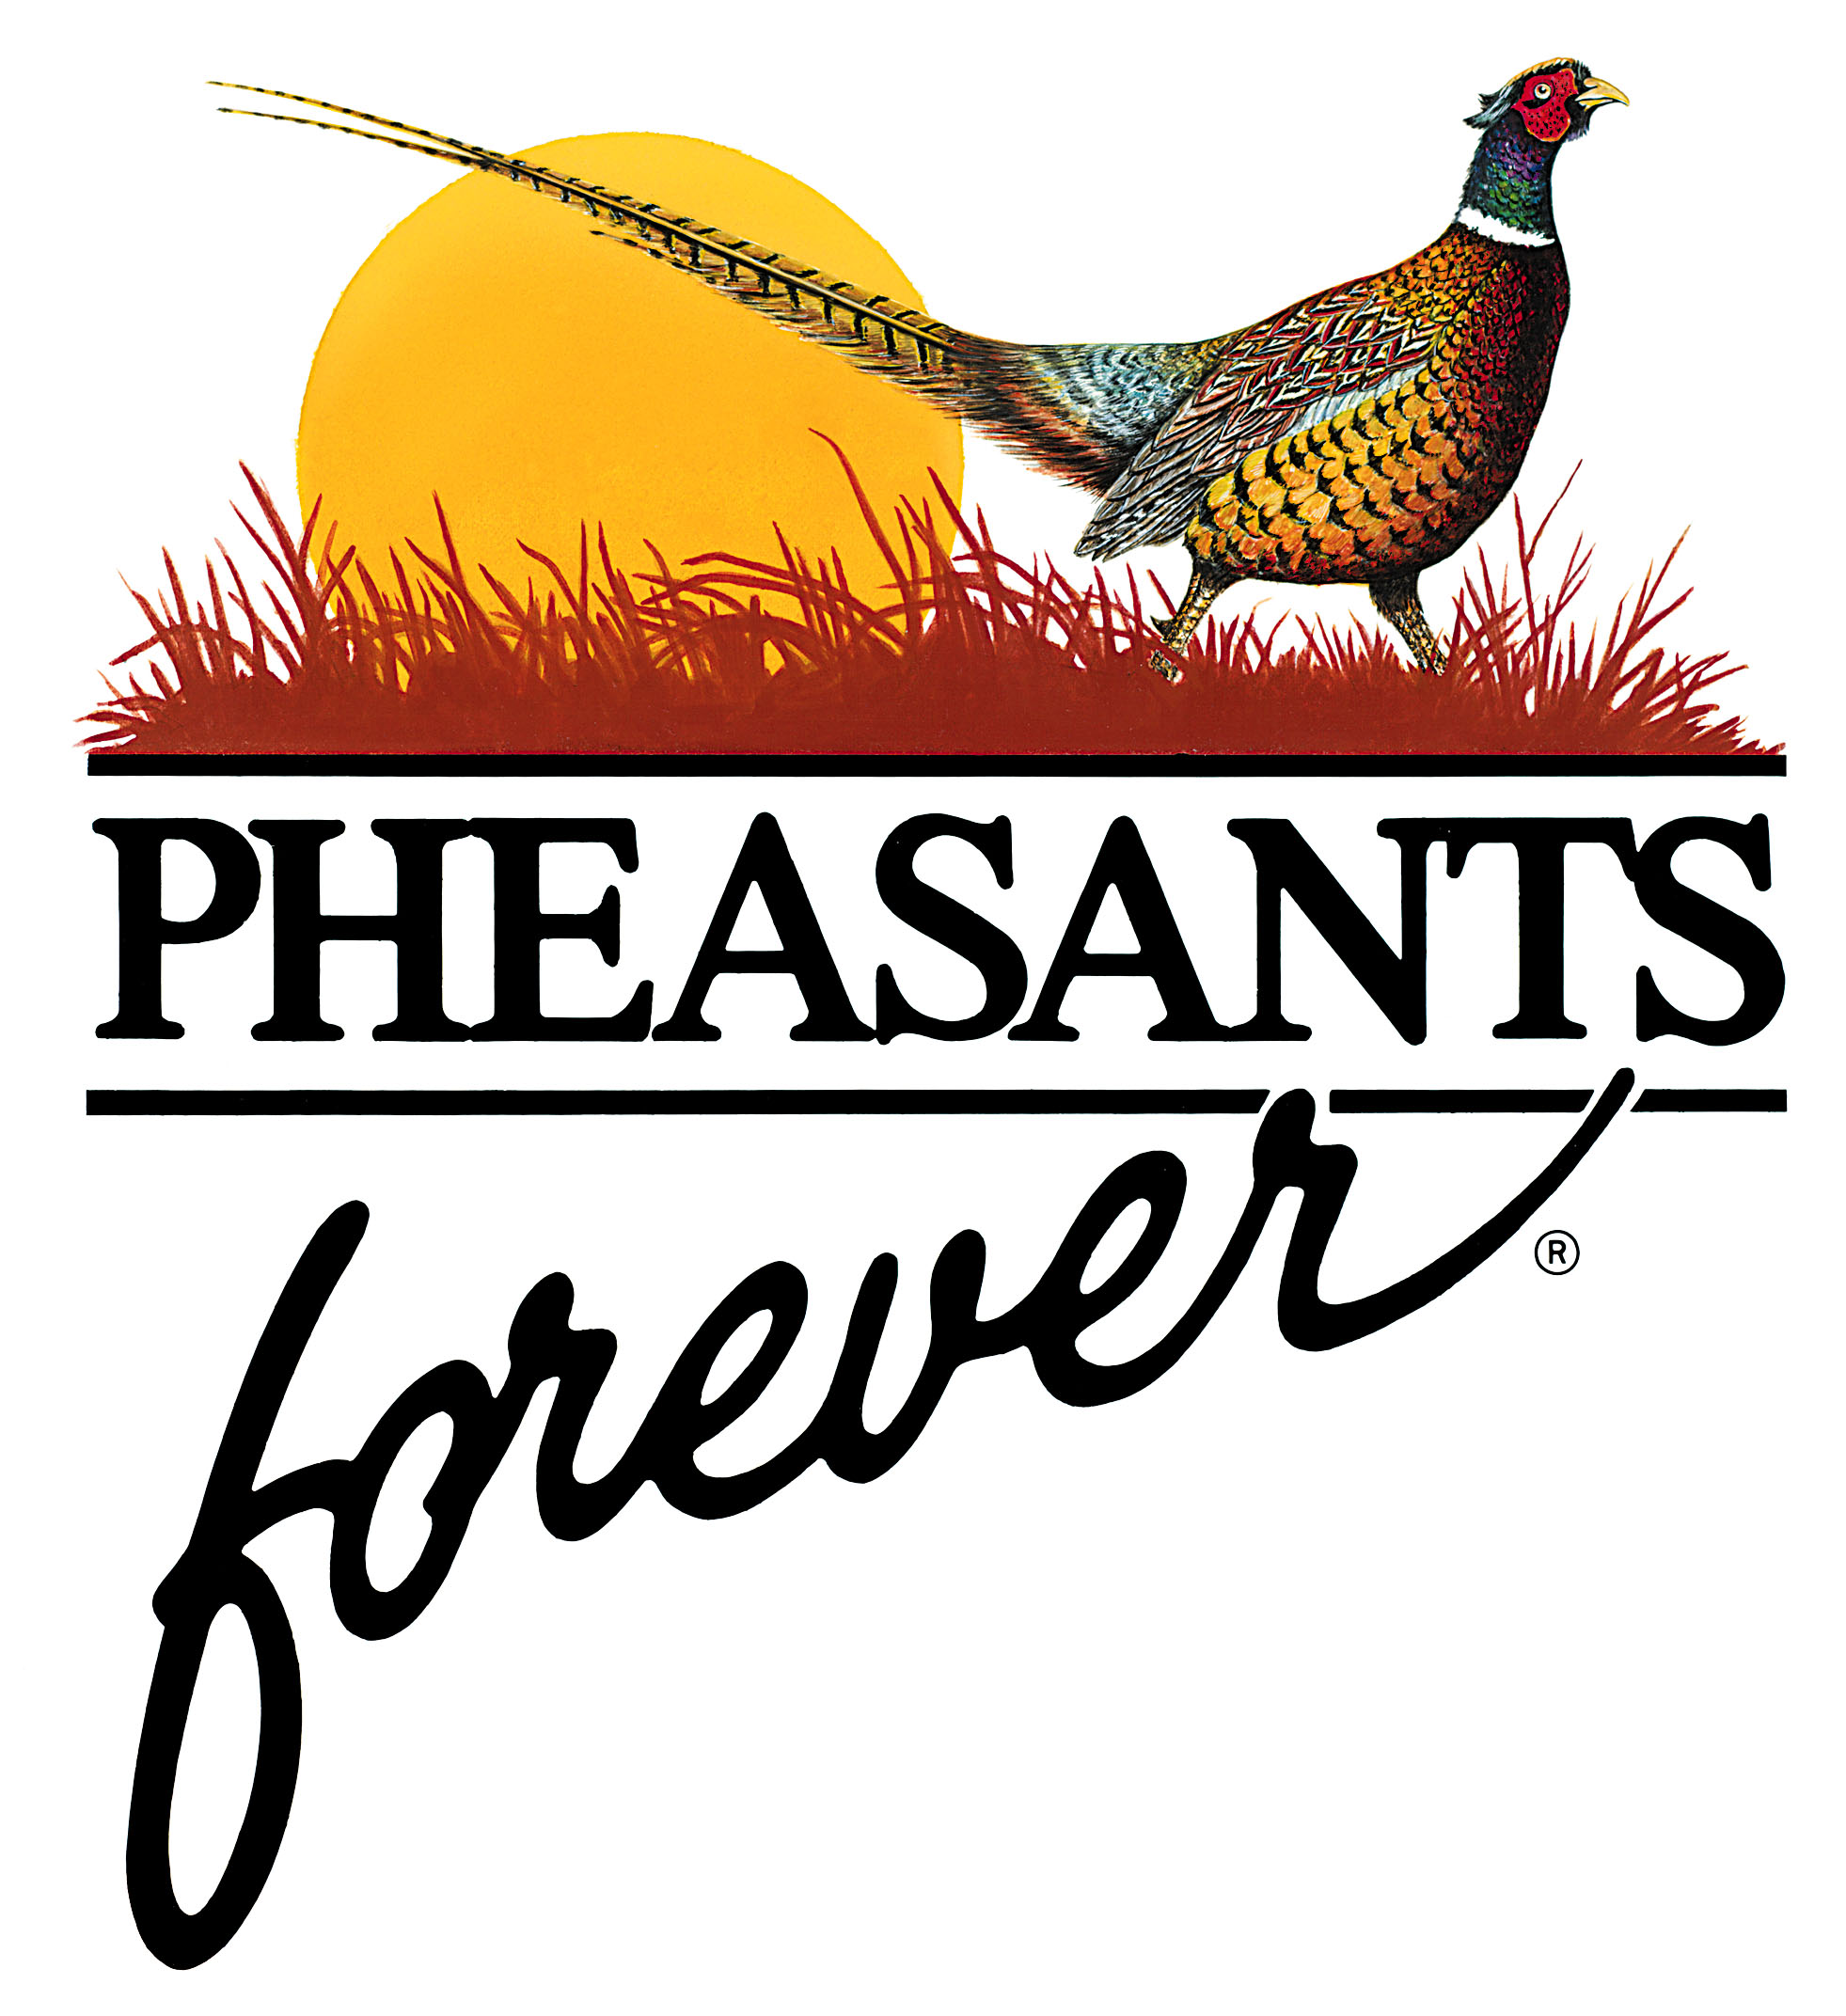 PheasantsForever.jpg